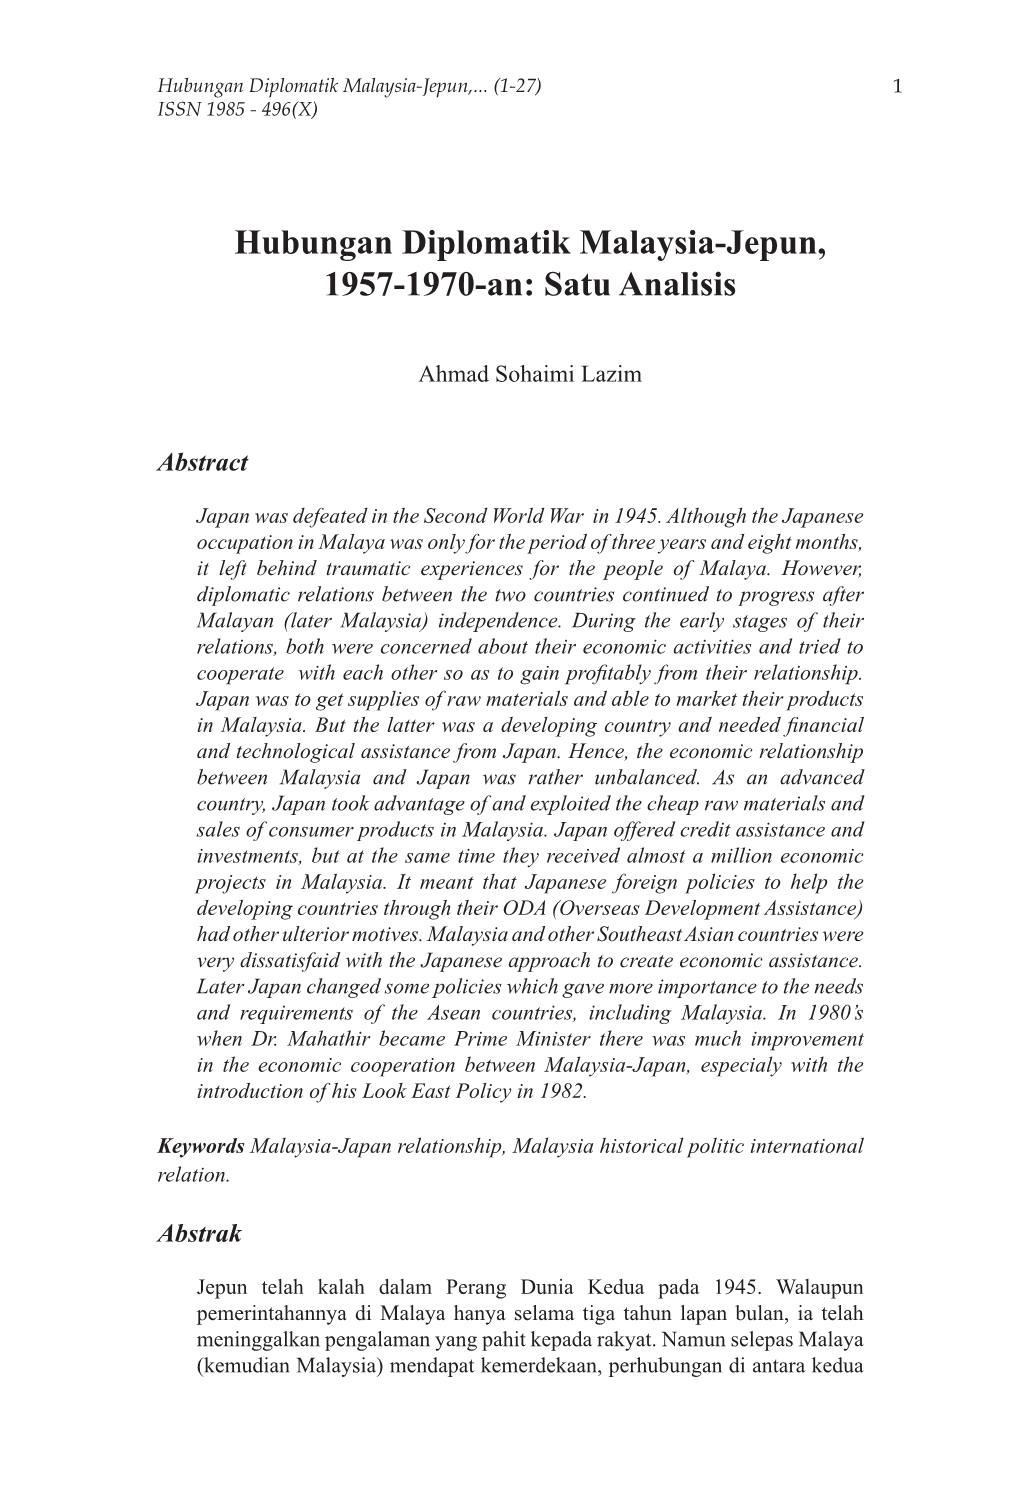 Hubungan Diplomatik Malaysia-Jepun, 1957-1970-An: Satu Analisis